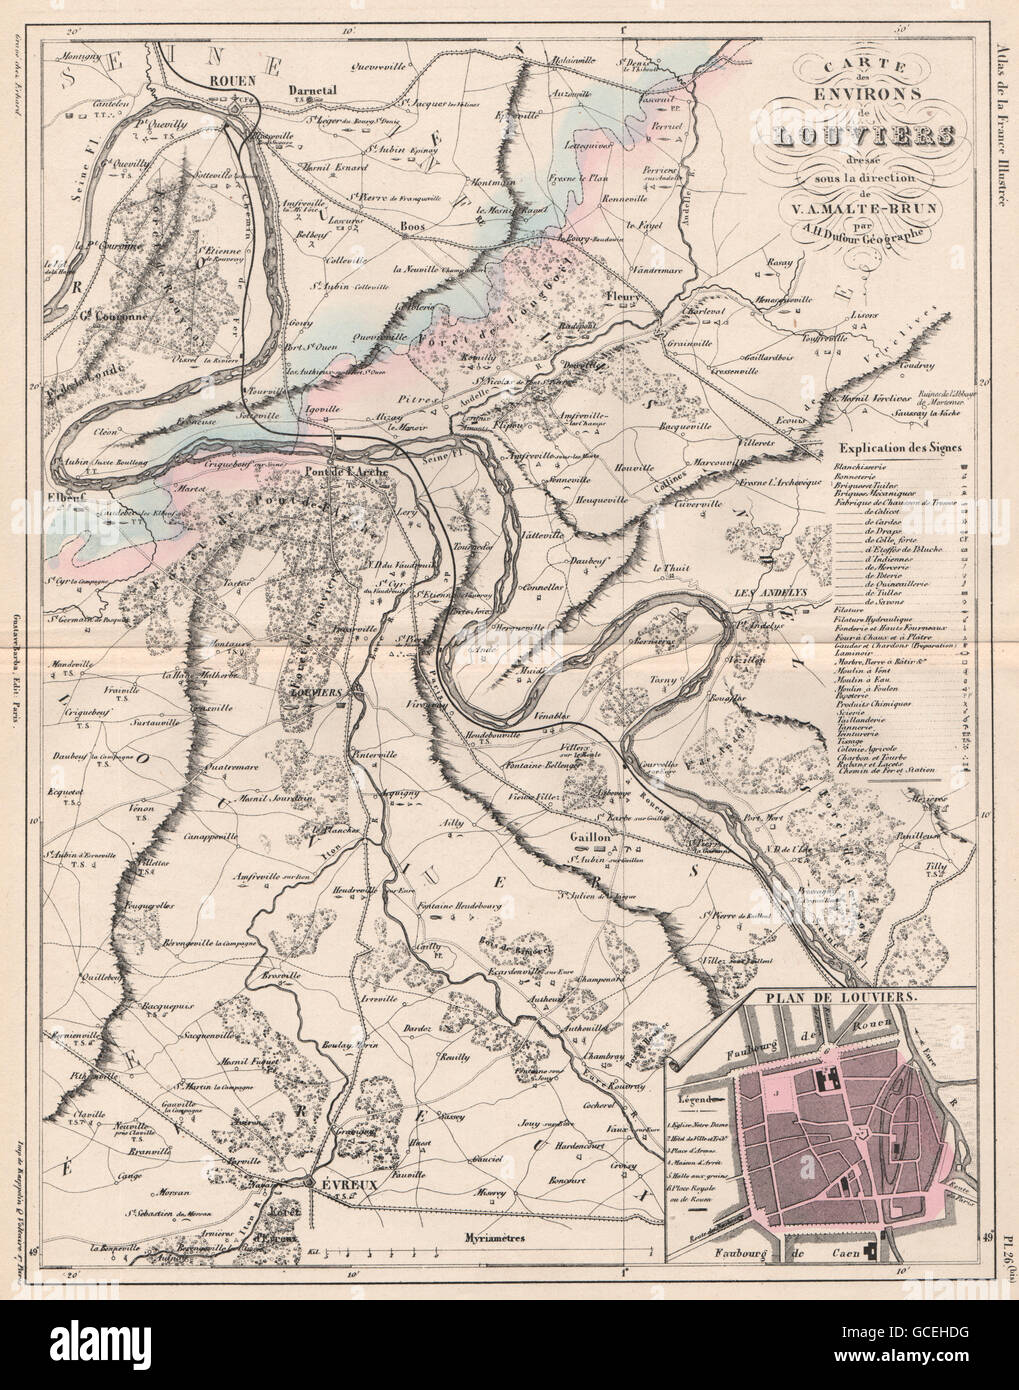 NORMANDIE. Rouen Louviers Évreux. Eure. Textiles/Industries.MALTE-BRUN, 1852 map Stock Photo